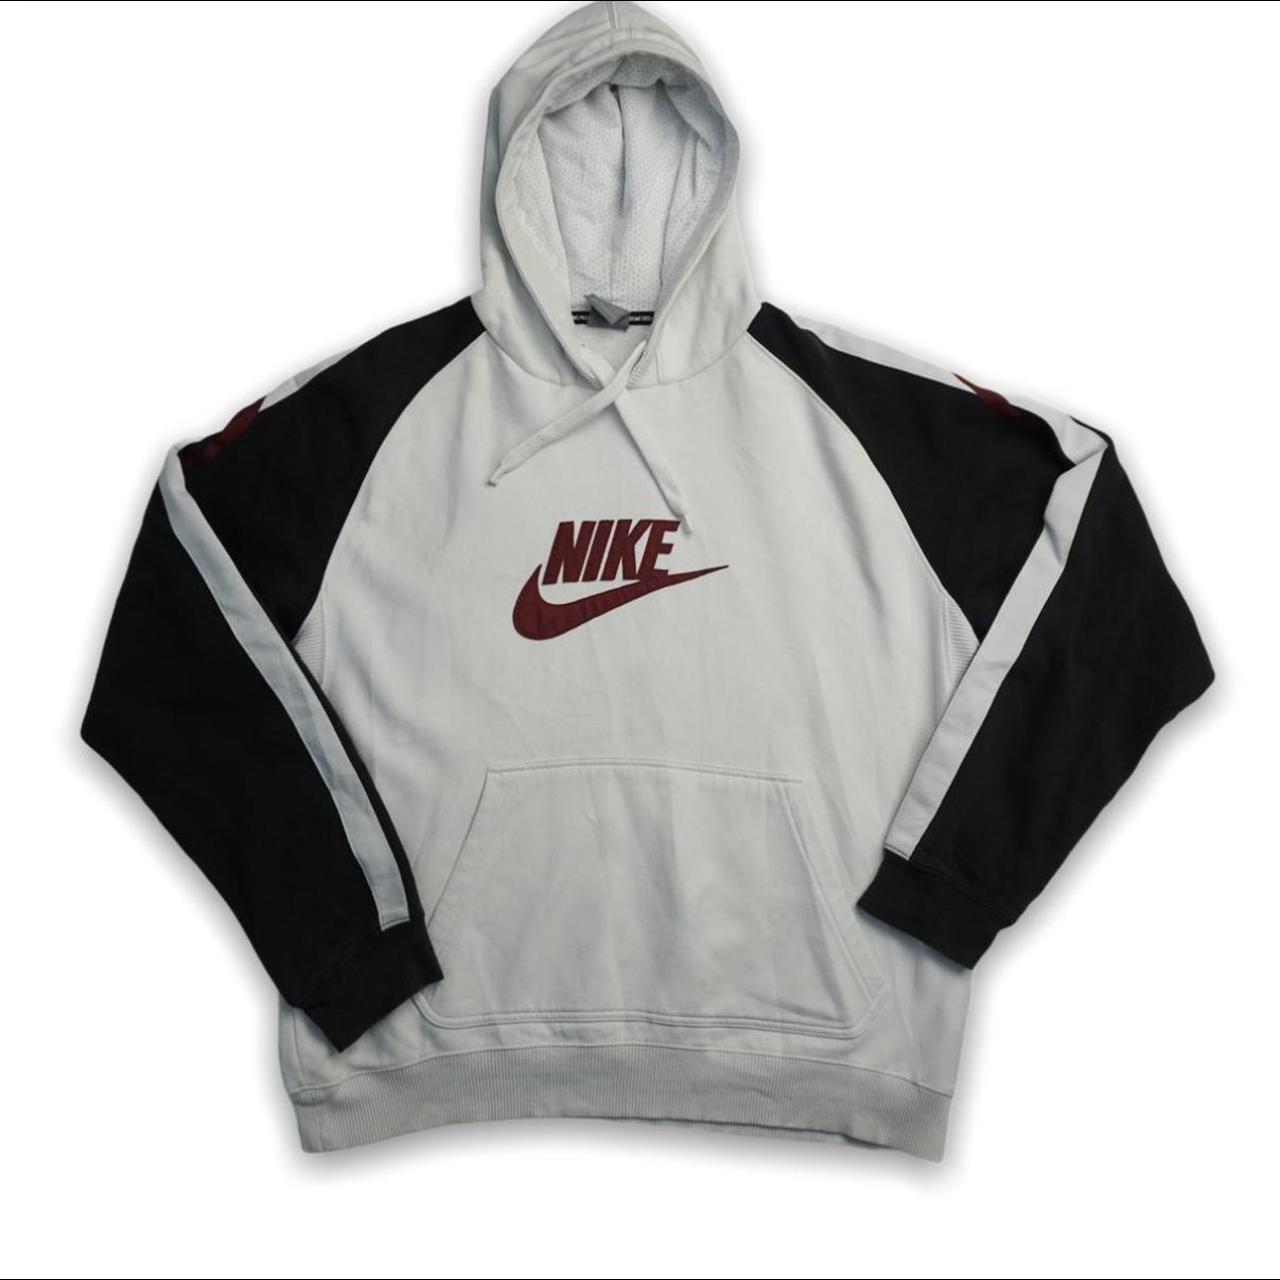 Vintage Nike hoodie Retro 00s Nike hoody. White... - Depop